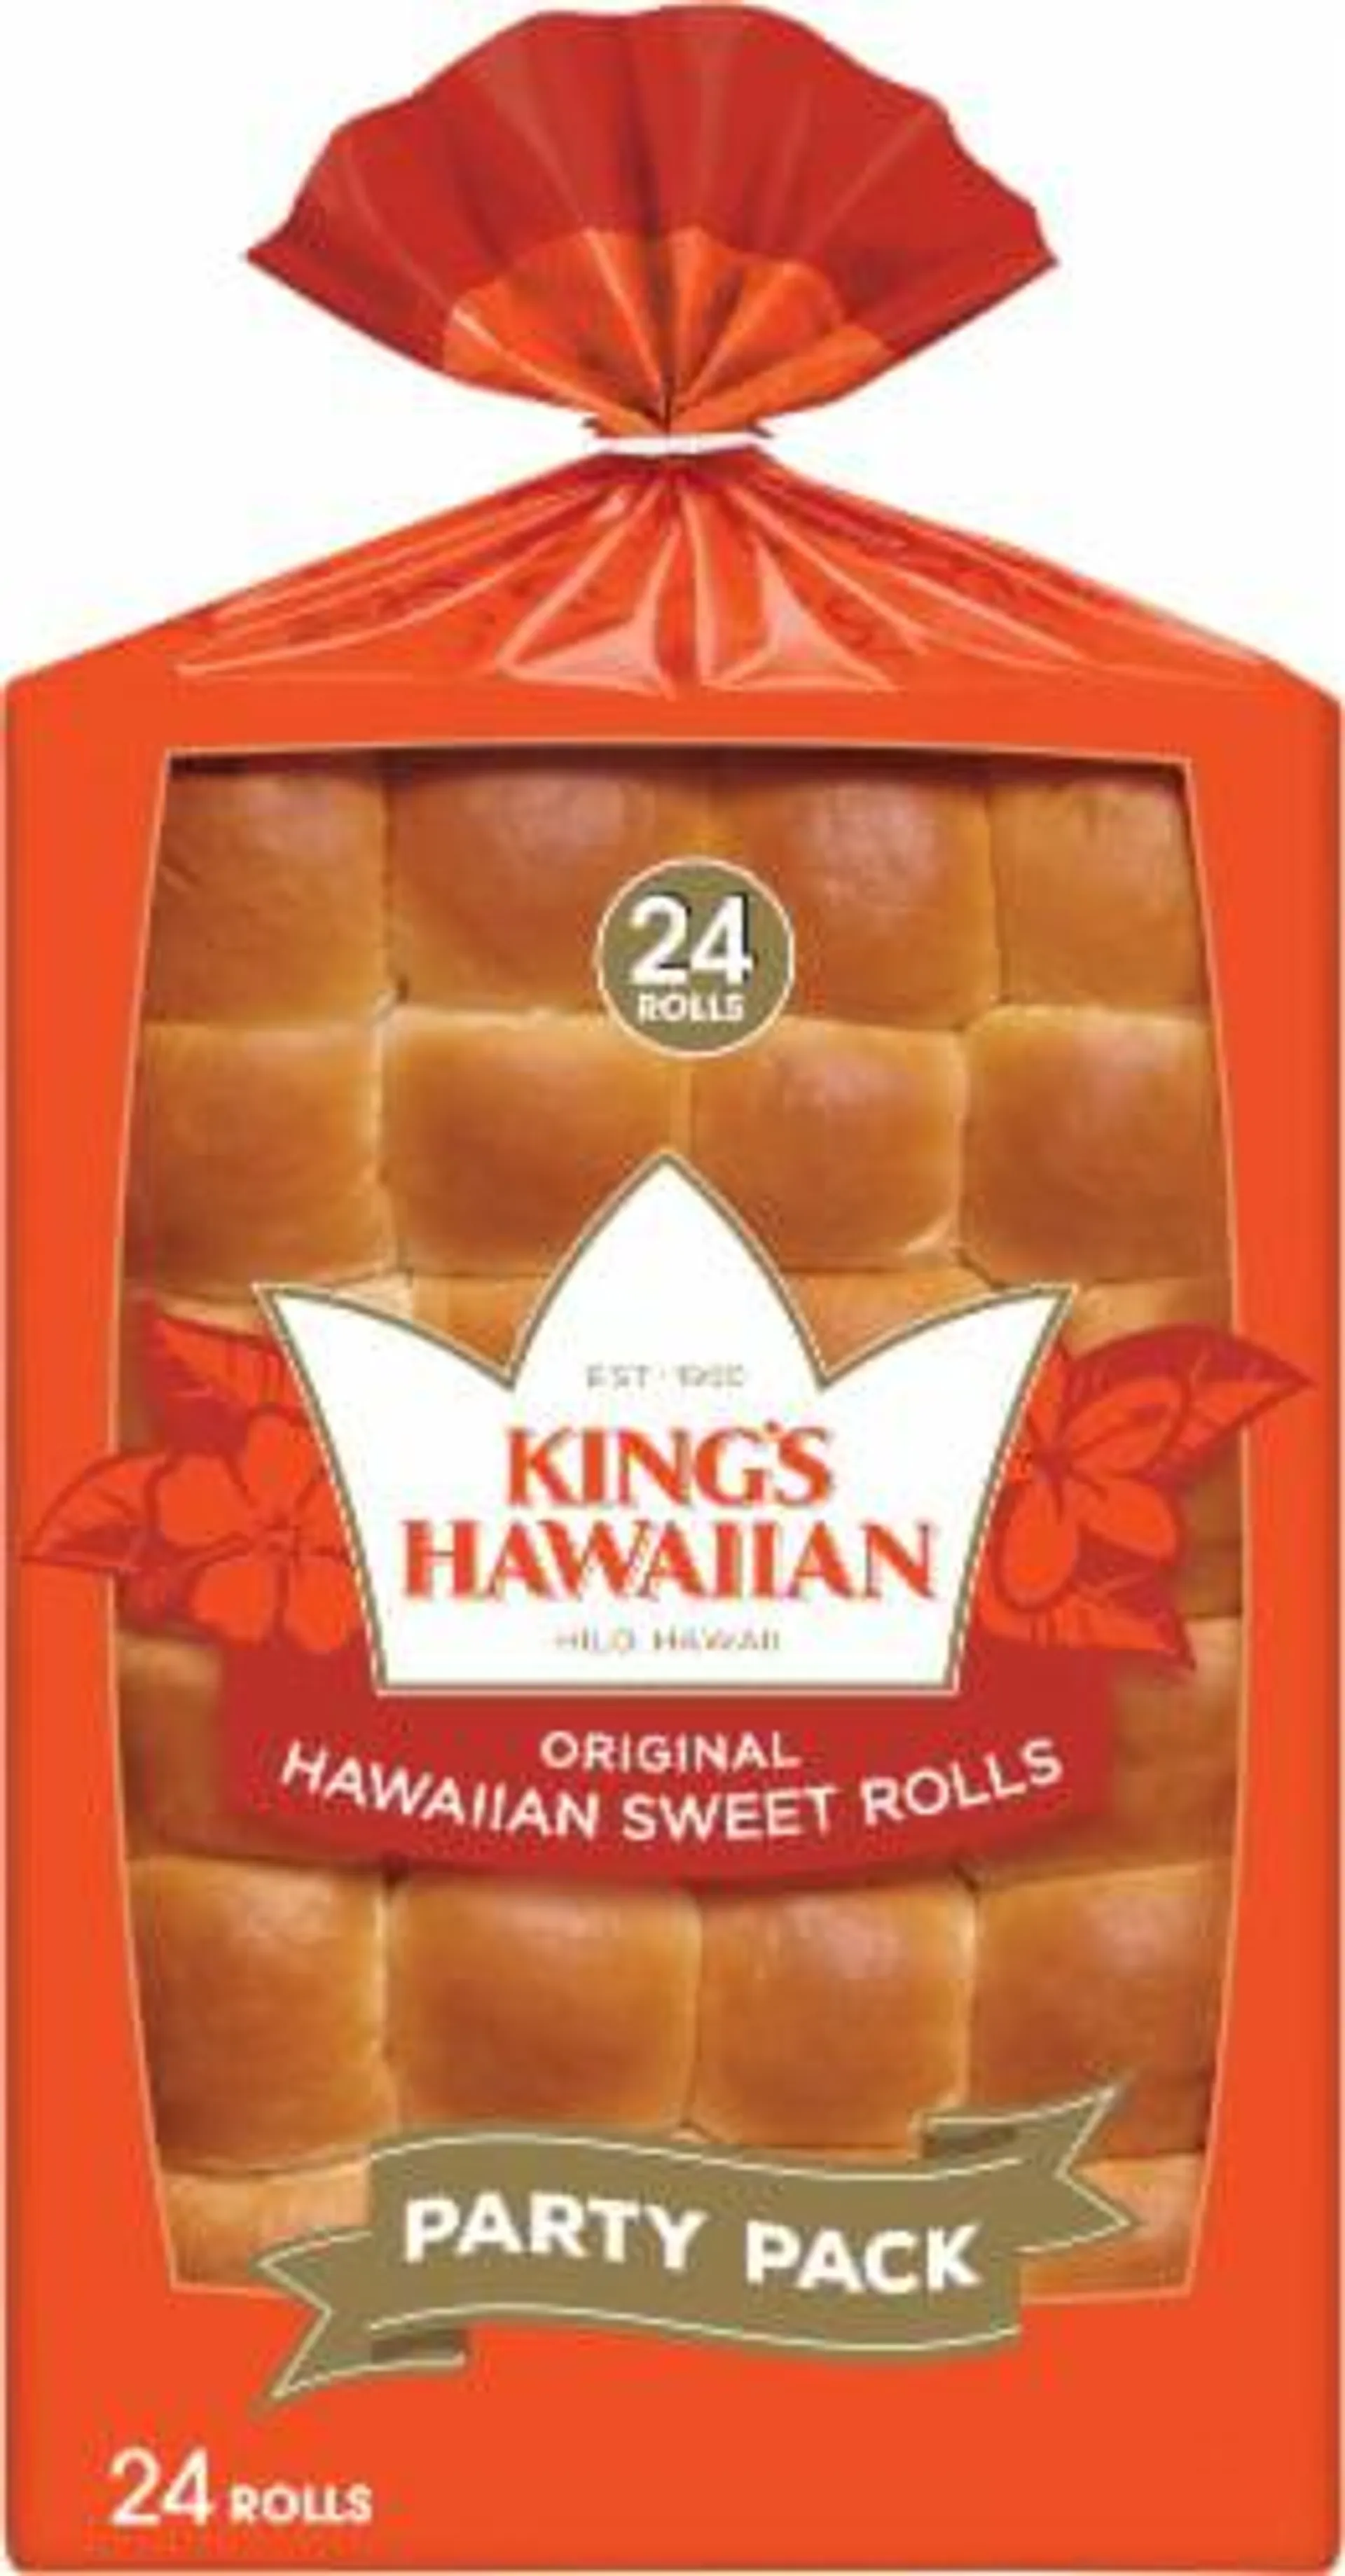 King's Hawaiian Original Hawaiian Sweet Rolls Party Pack